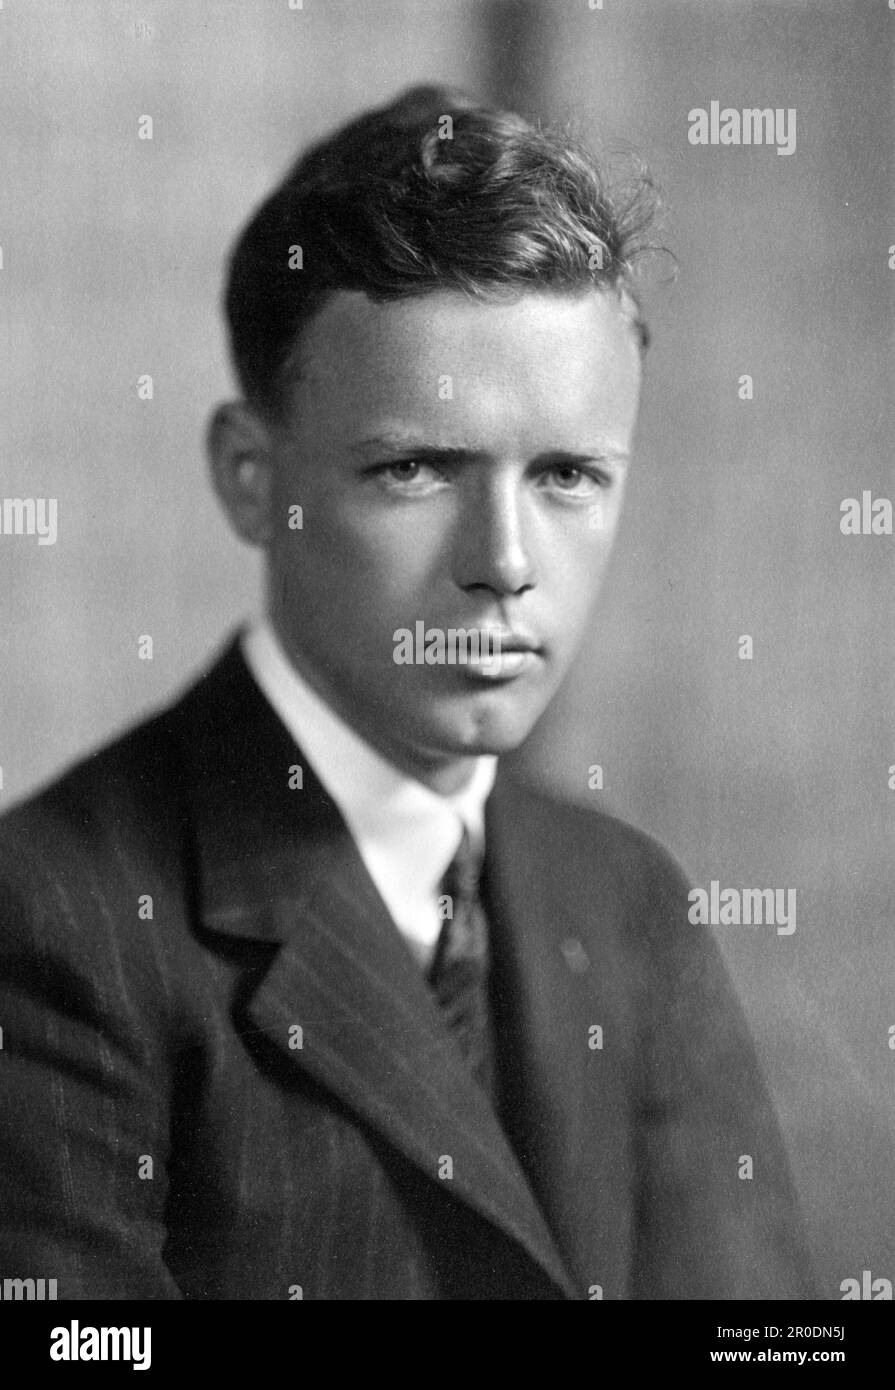 Charles Lindbergh (1902-1974), l'aviateur américain célèbre pour son premier vol solo sans escale à travers l'Atlantique en 1927. Photo par Harris & Ewing Studio, 1927 Banque D'Images